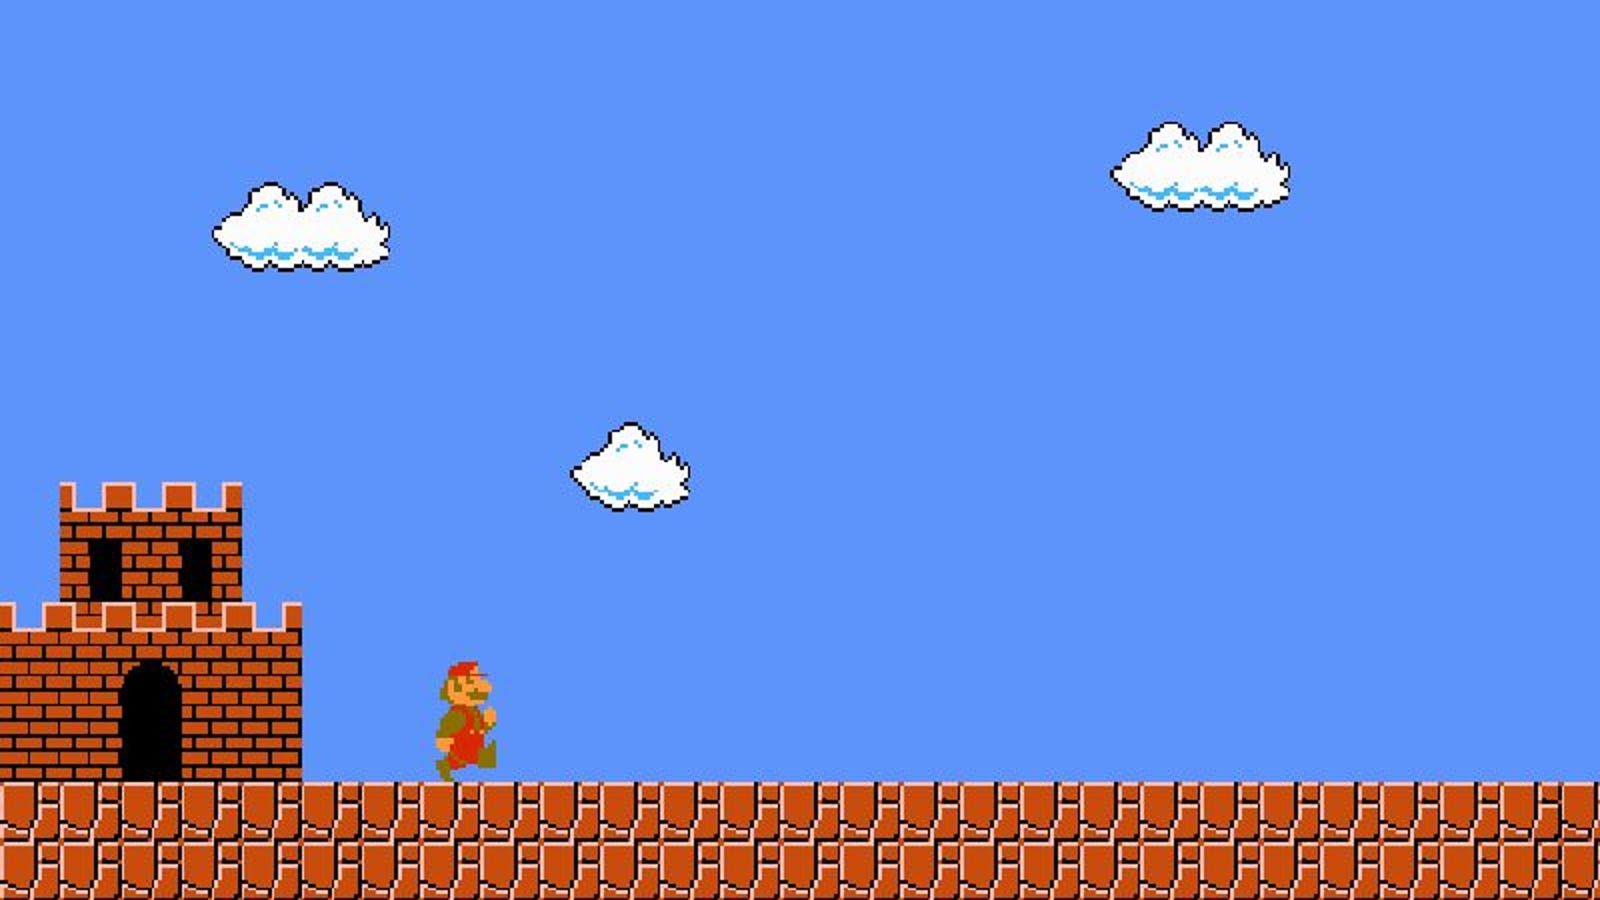 The original Super Mario Bros. remains Mario's loneliest quest